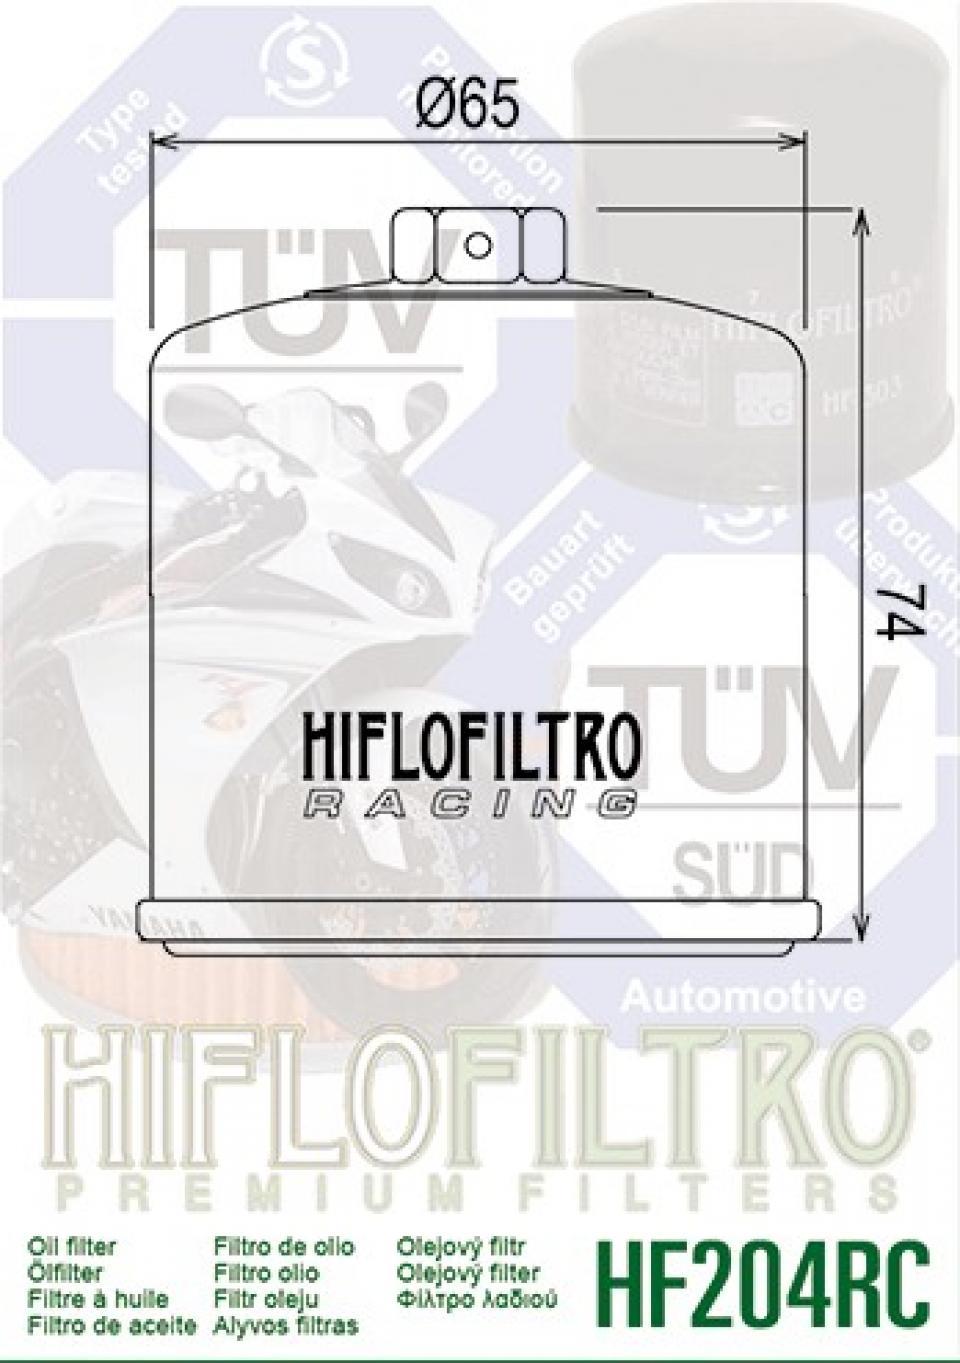 Filtre à huile Hiflofiltro pour Moto Triumph 675 Street triple 2007 à 2016 HF204 Neuf